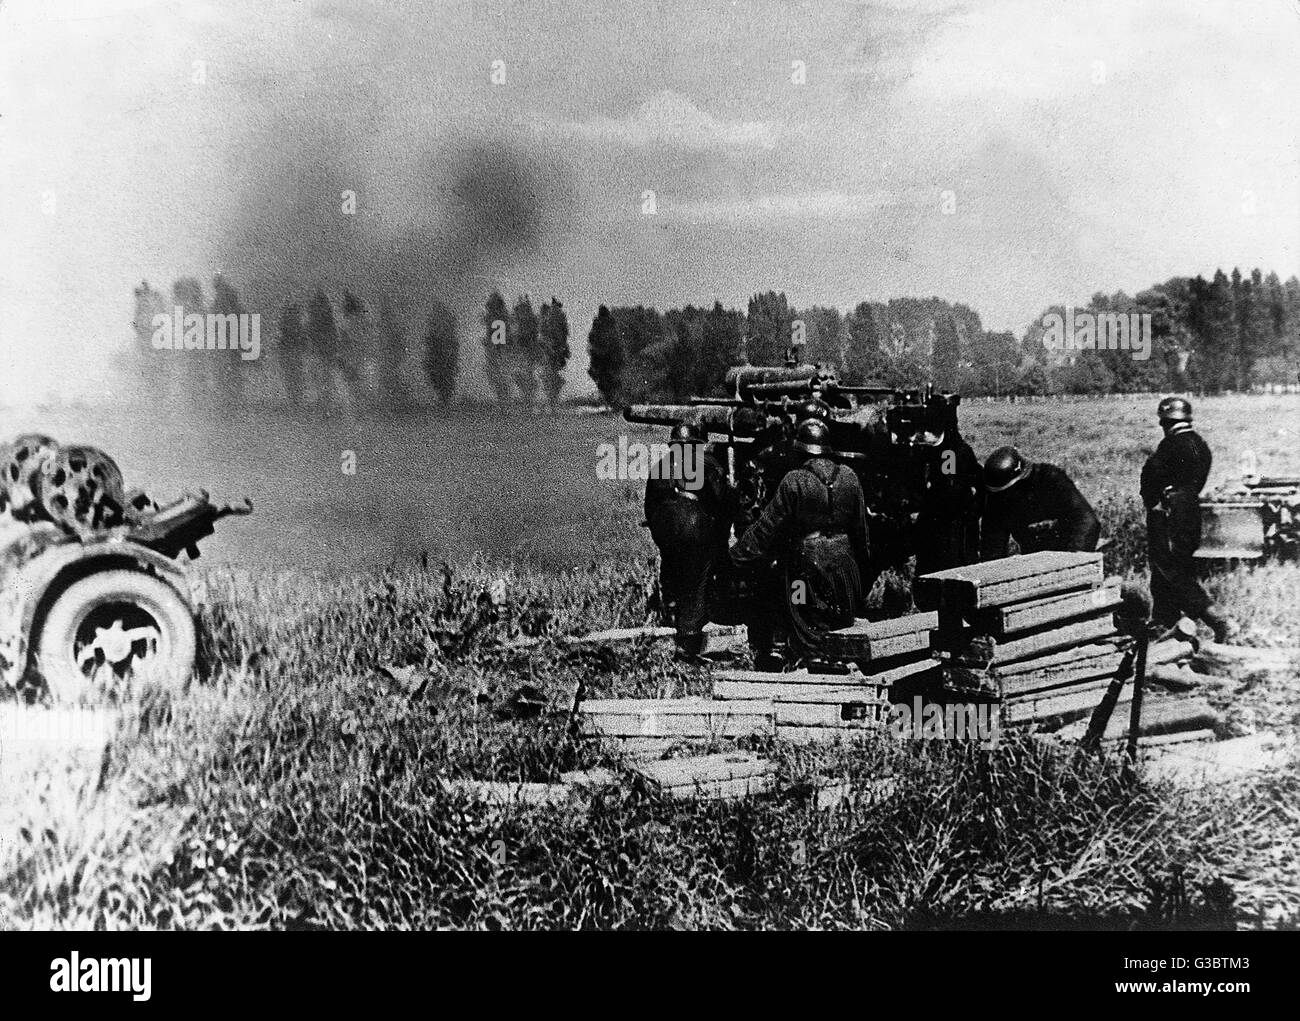 Einer der Rommels 8,8 cm Flak-Geschütze im Kampf gegen britische Panzer Datum: Mai 1940 Stockfoto